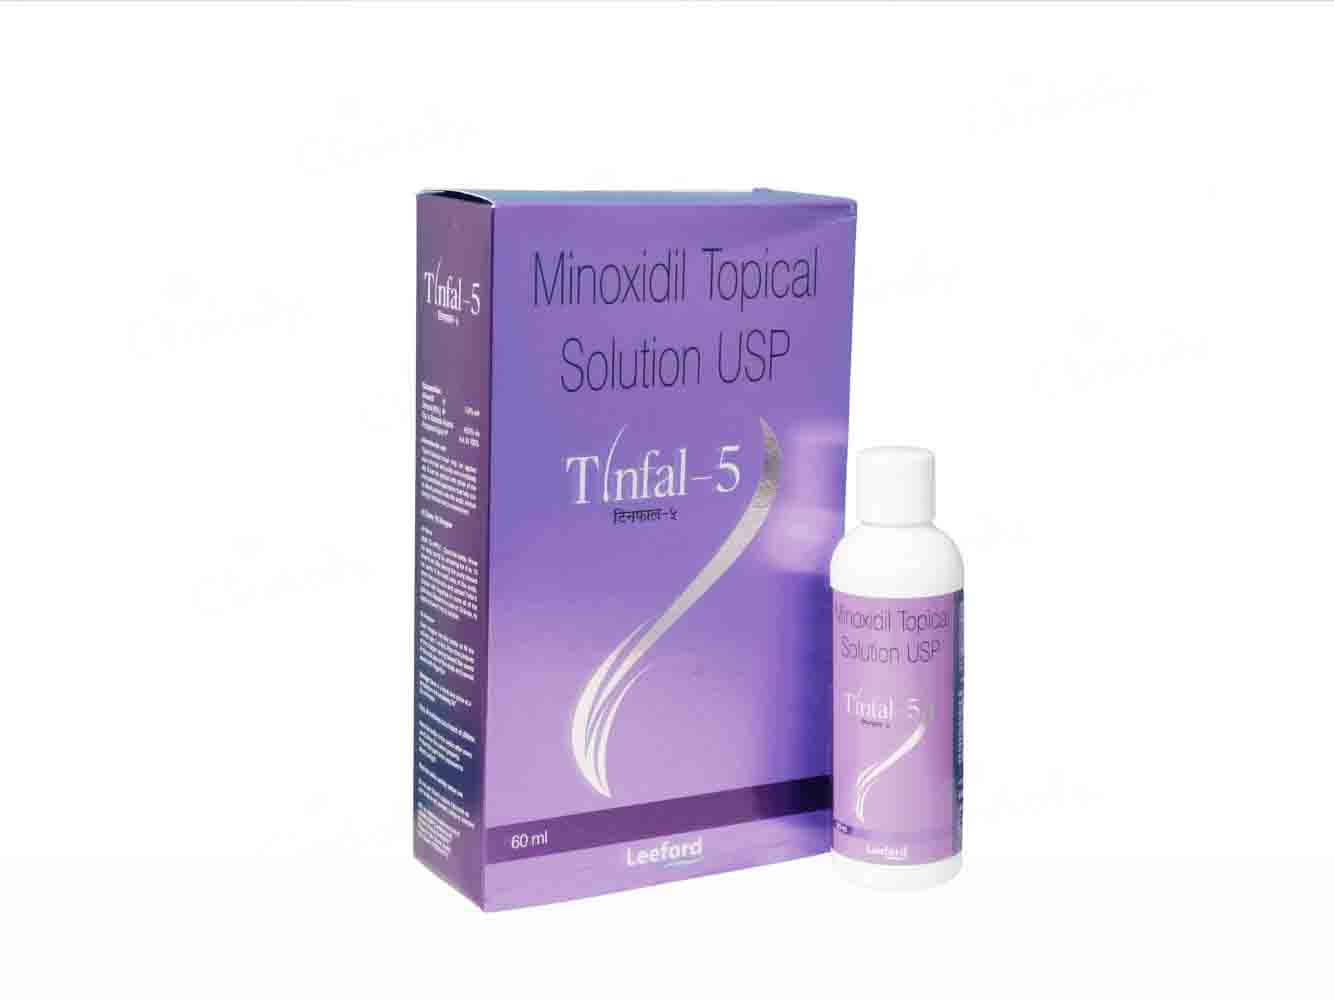 Tinfal-5 Topical Solution - Clinikally